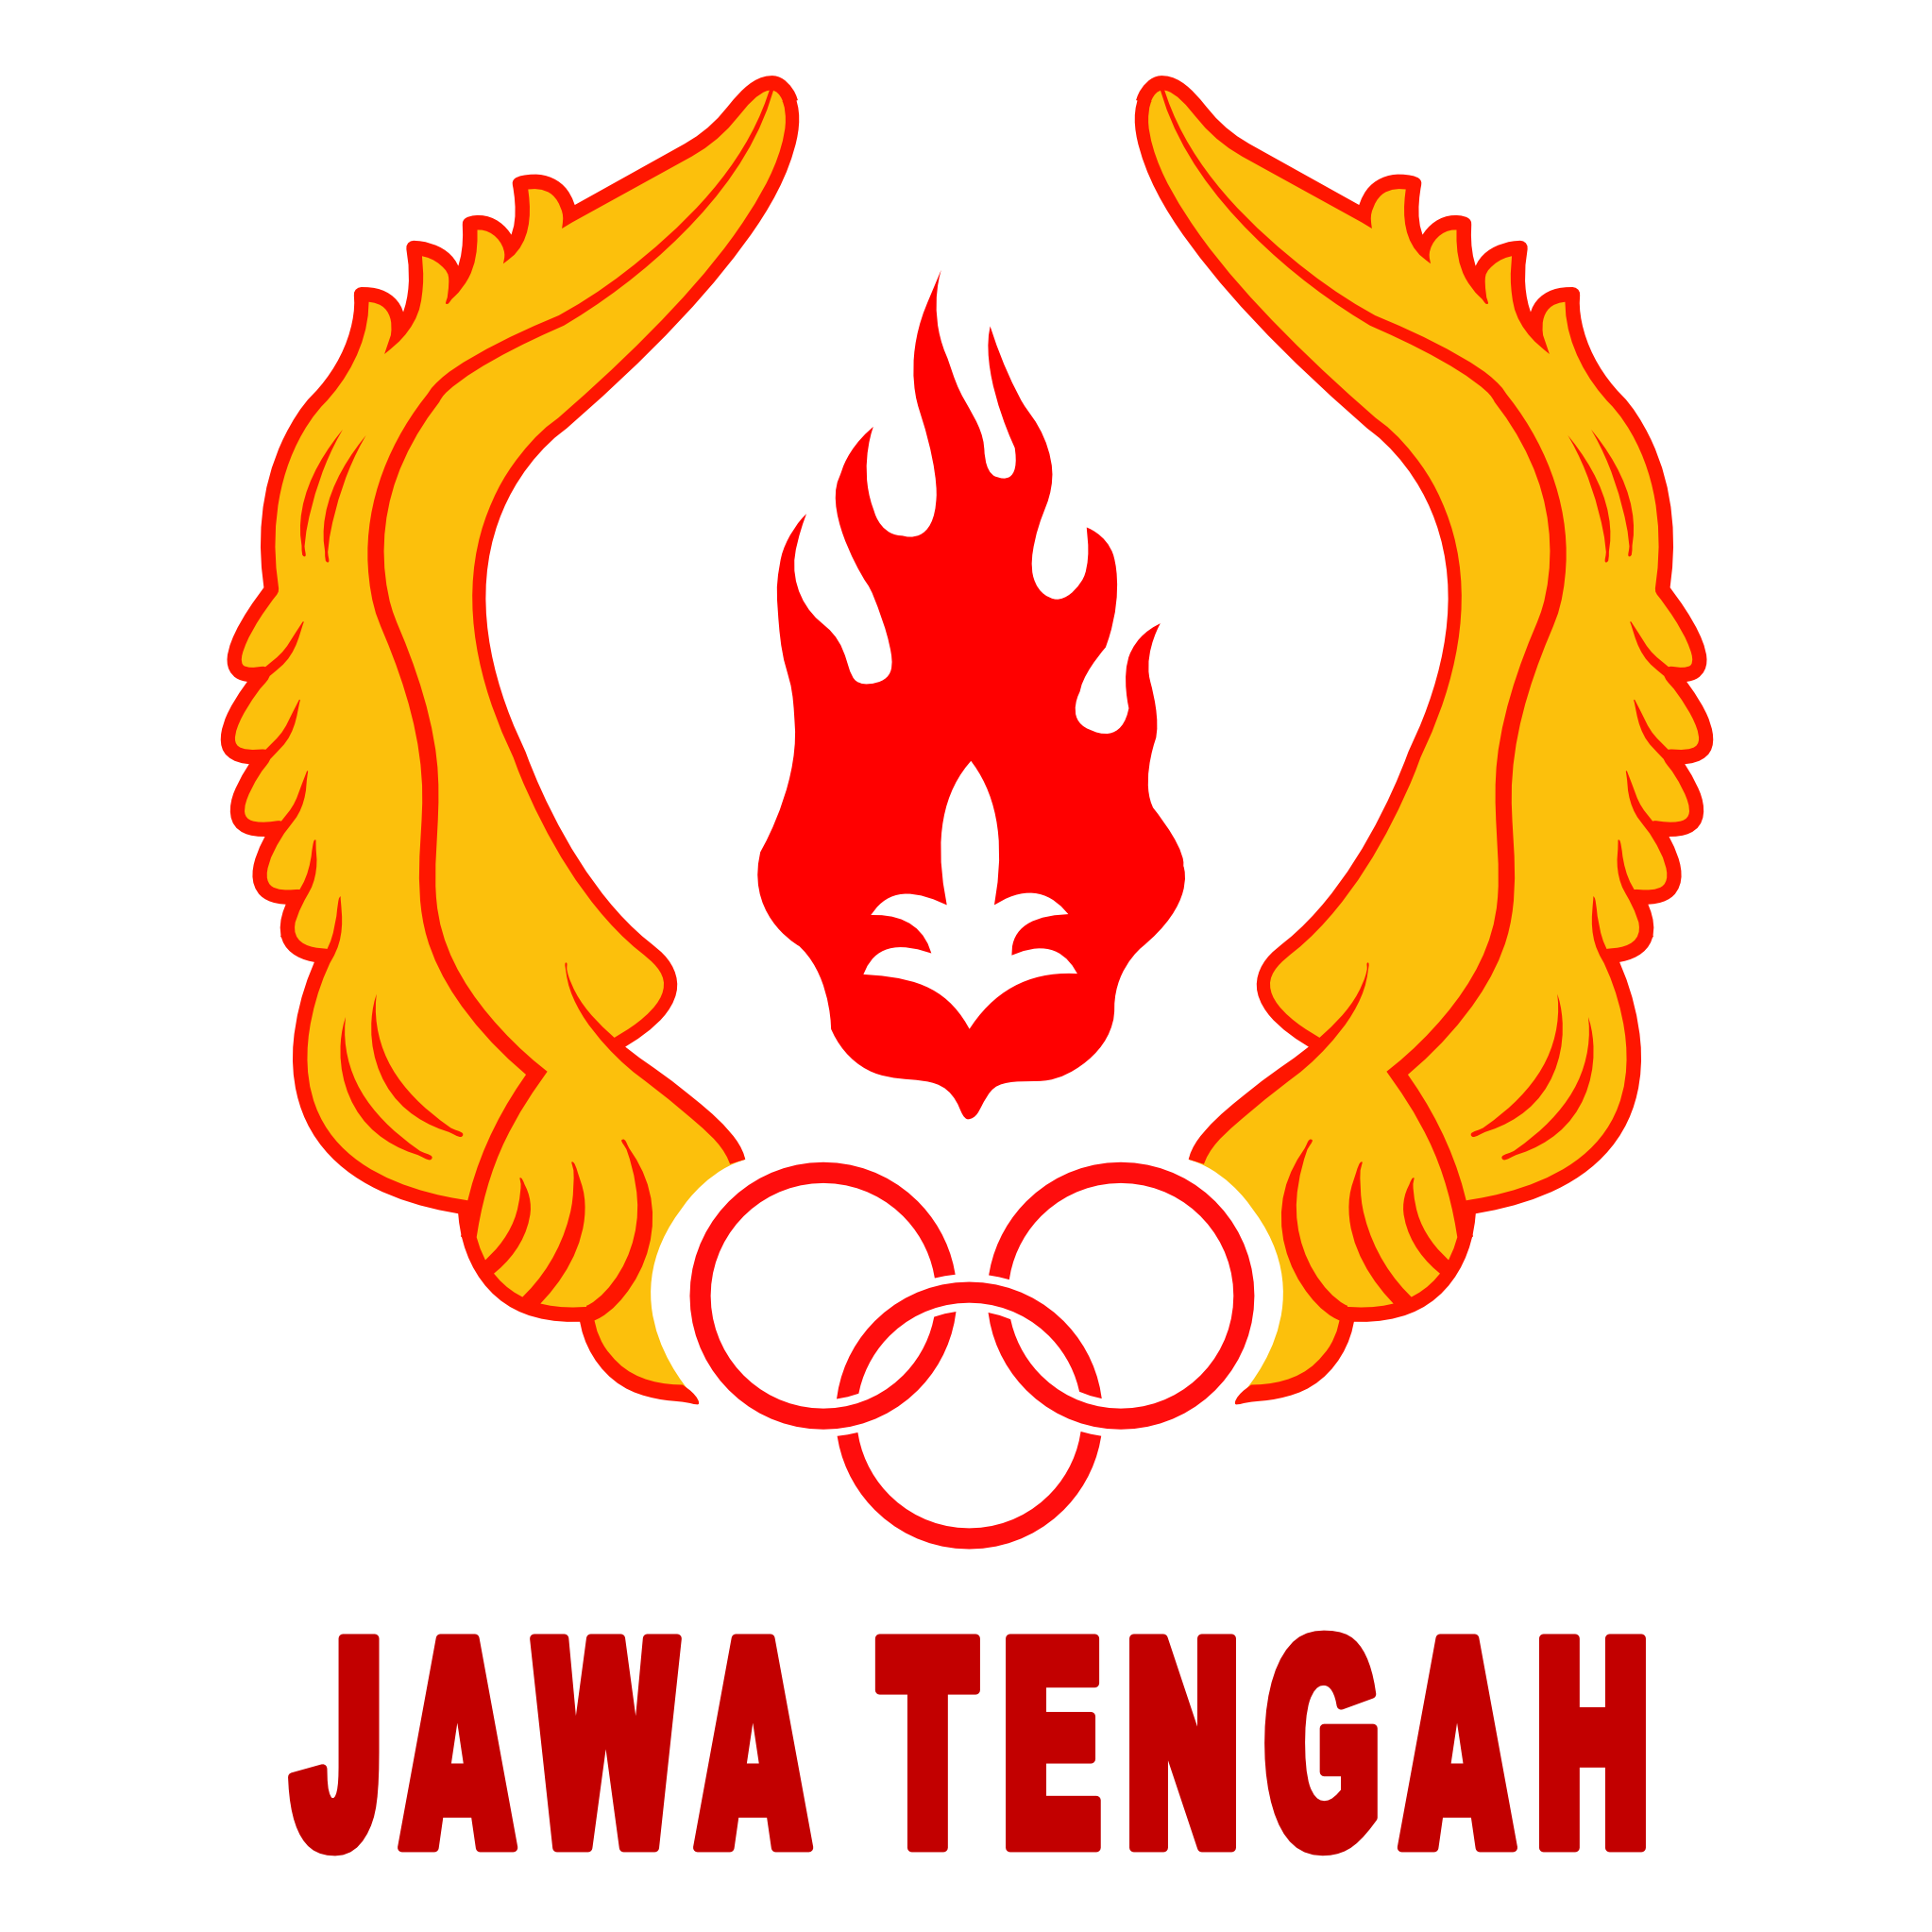 Komite Olahraga Nasional Indonesia Provinsi Jawa Tengah